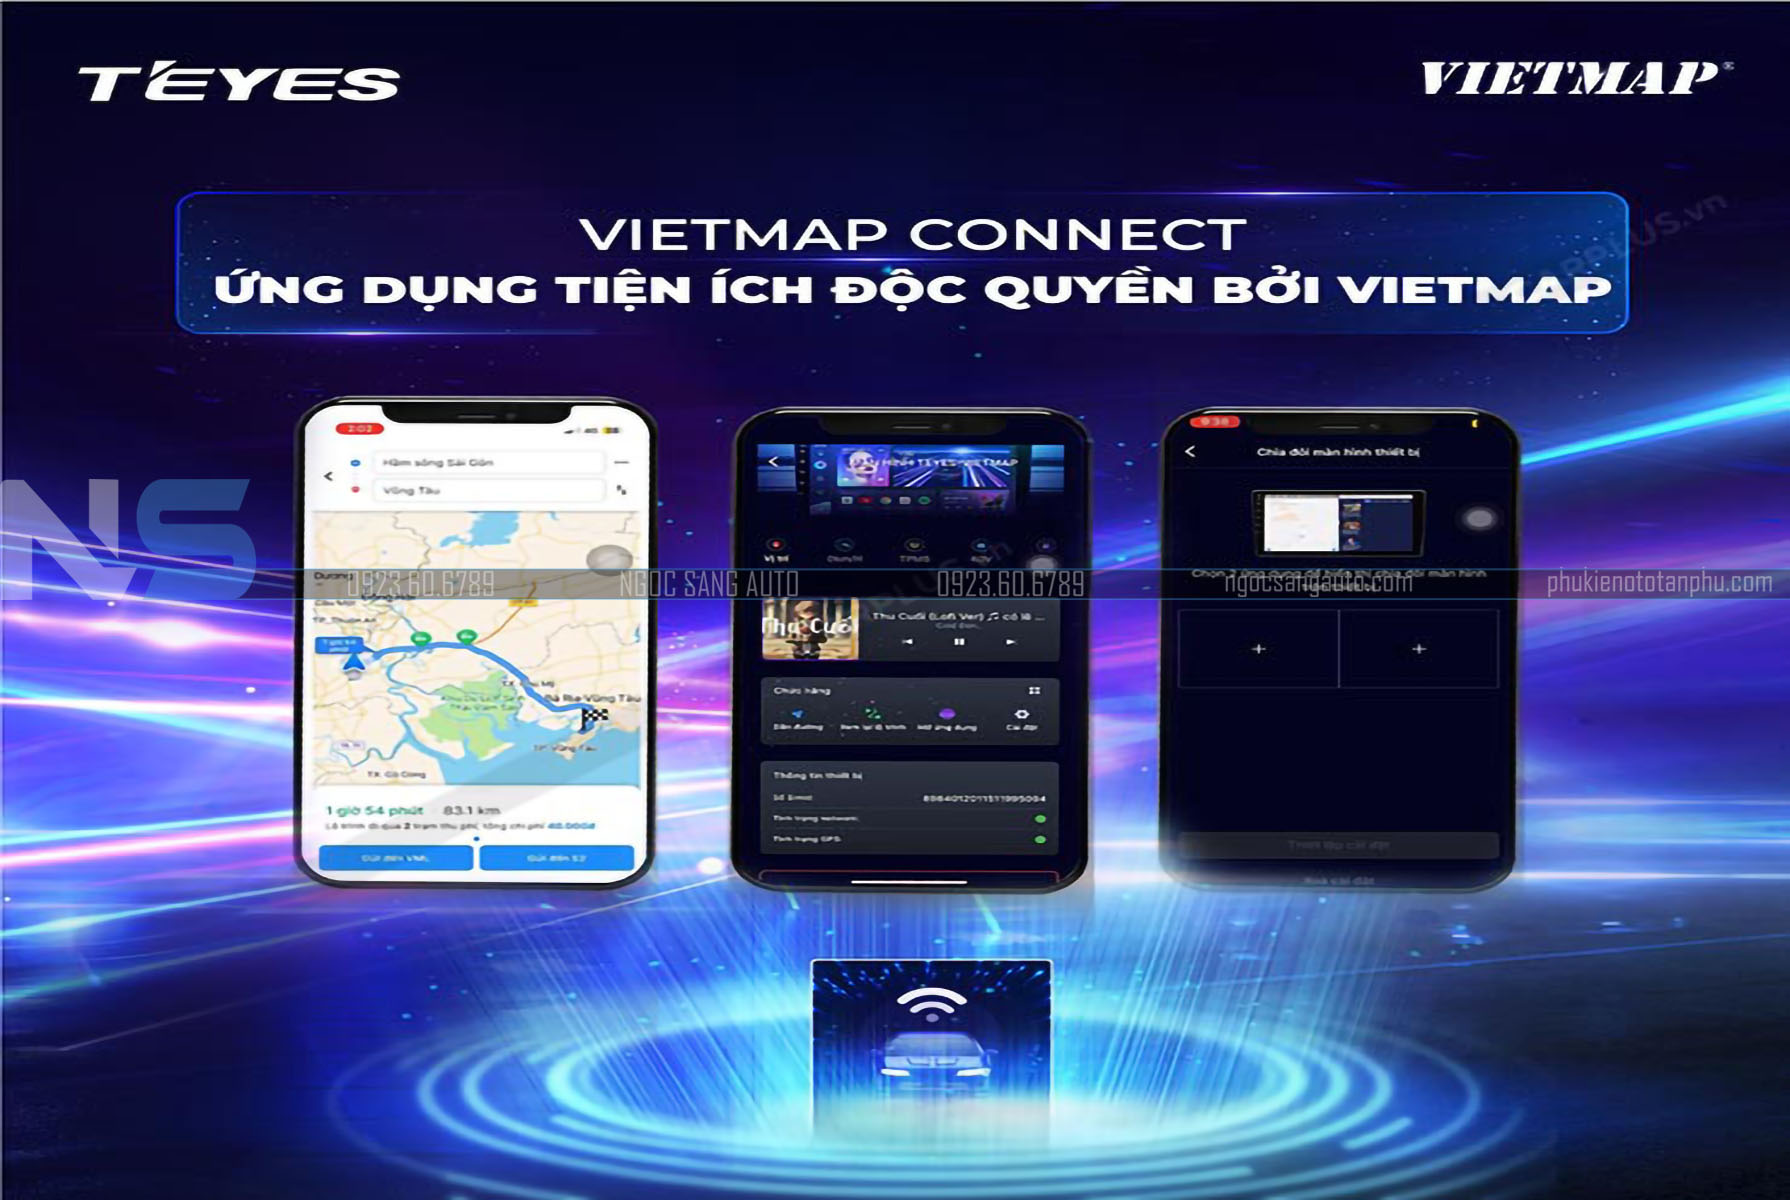 Đồng bộ giữa màn hình và điện thoại với ứng dụng Vietmap Connect